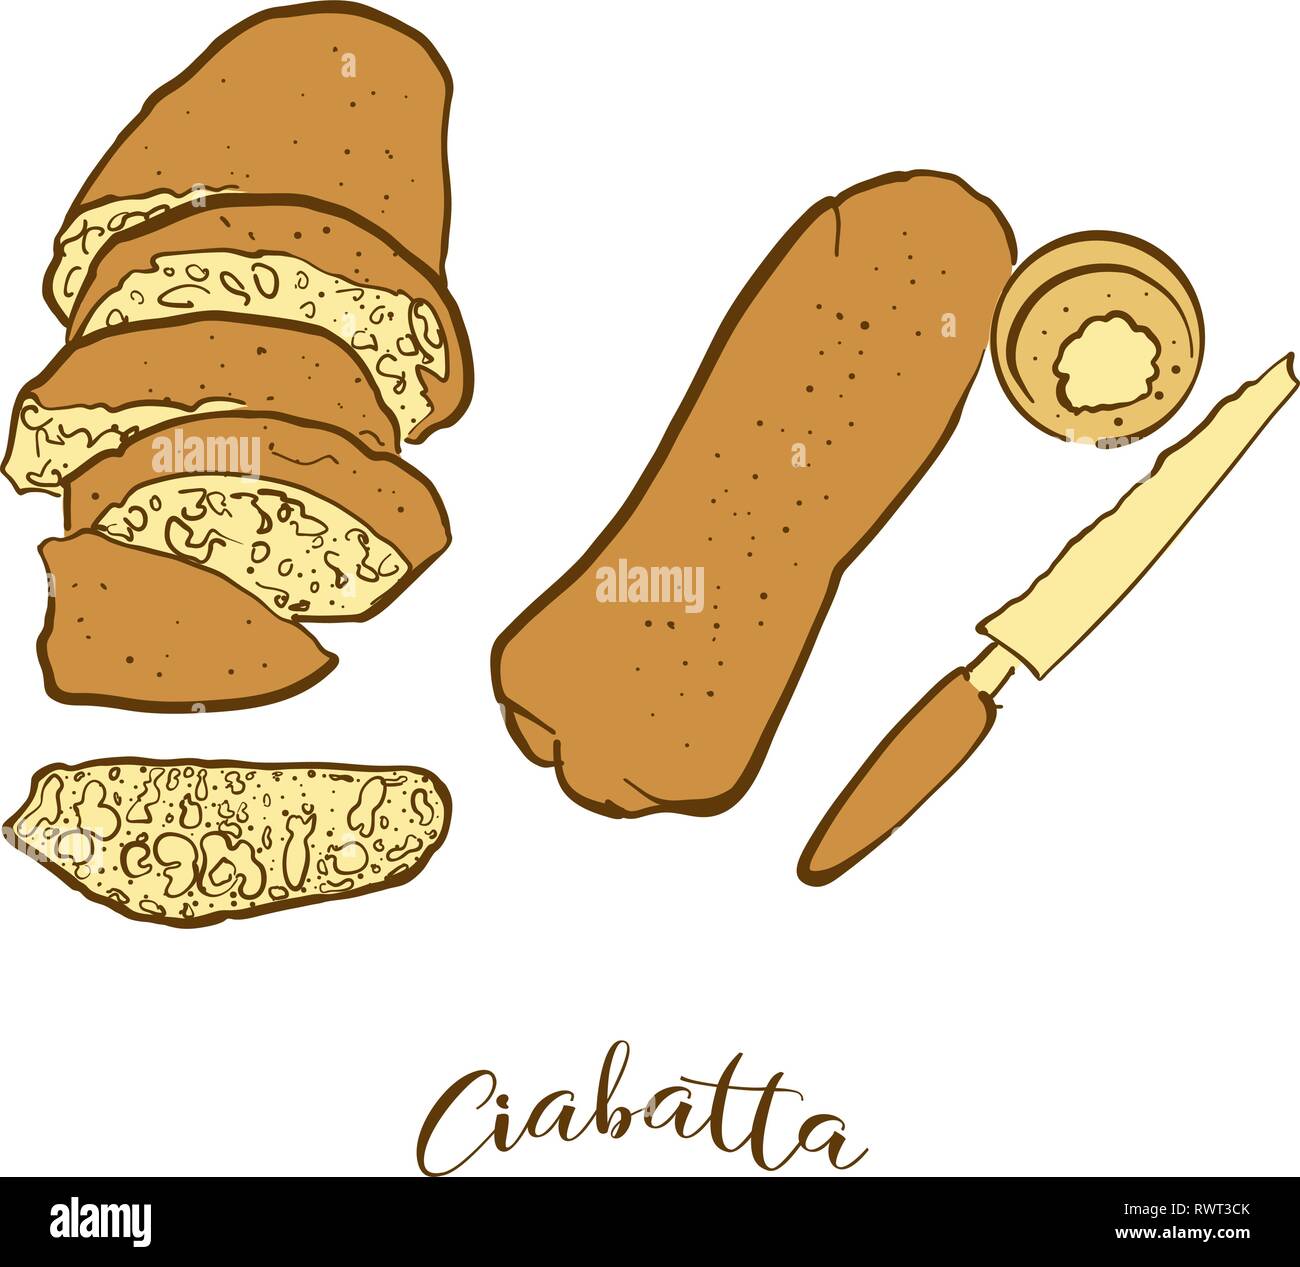 Farbige Skizzen von Ciabatta Brot. Vektor Zeichnung des Weißen Essen, in der Regel in Italien bekannt. Farbige Brot Abbildung Serie. Stock Vektor